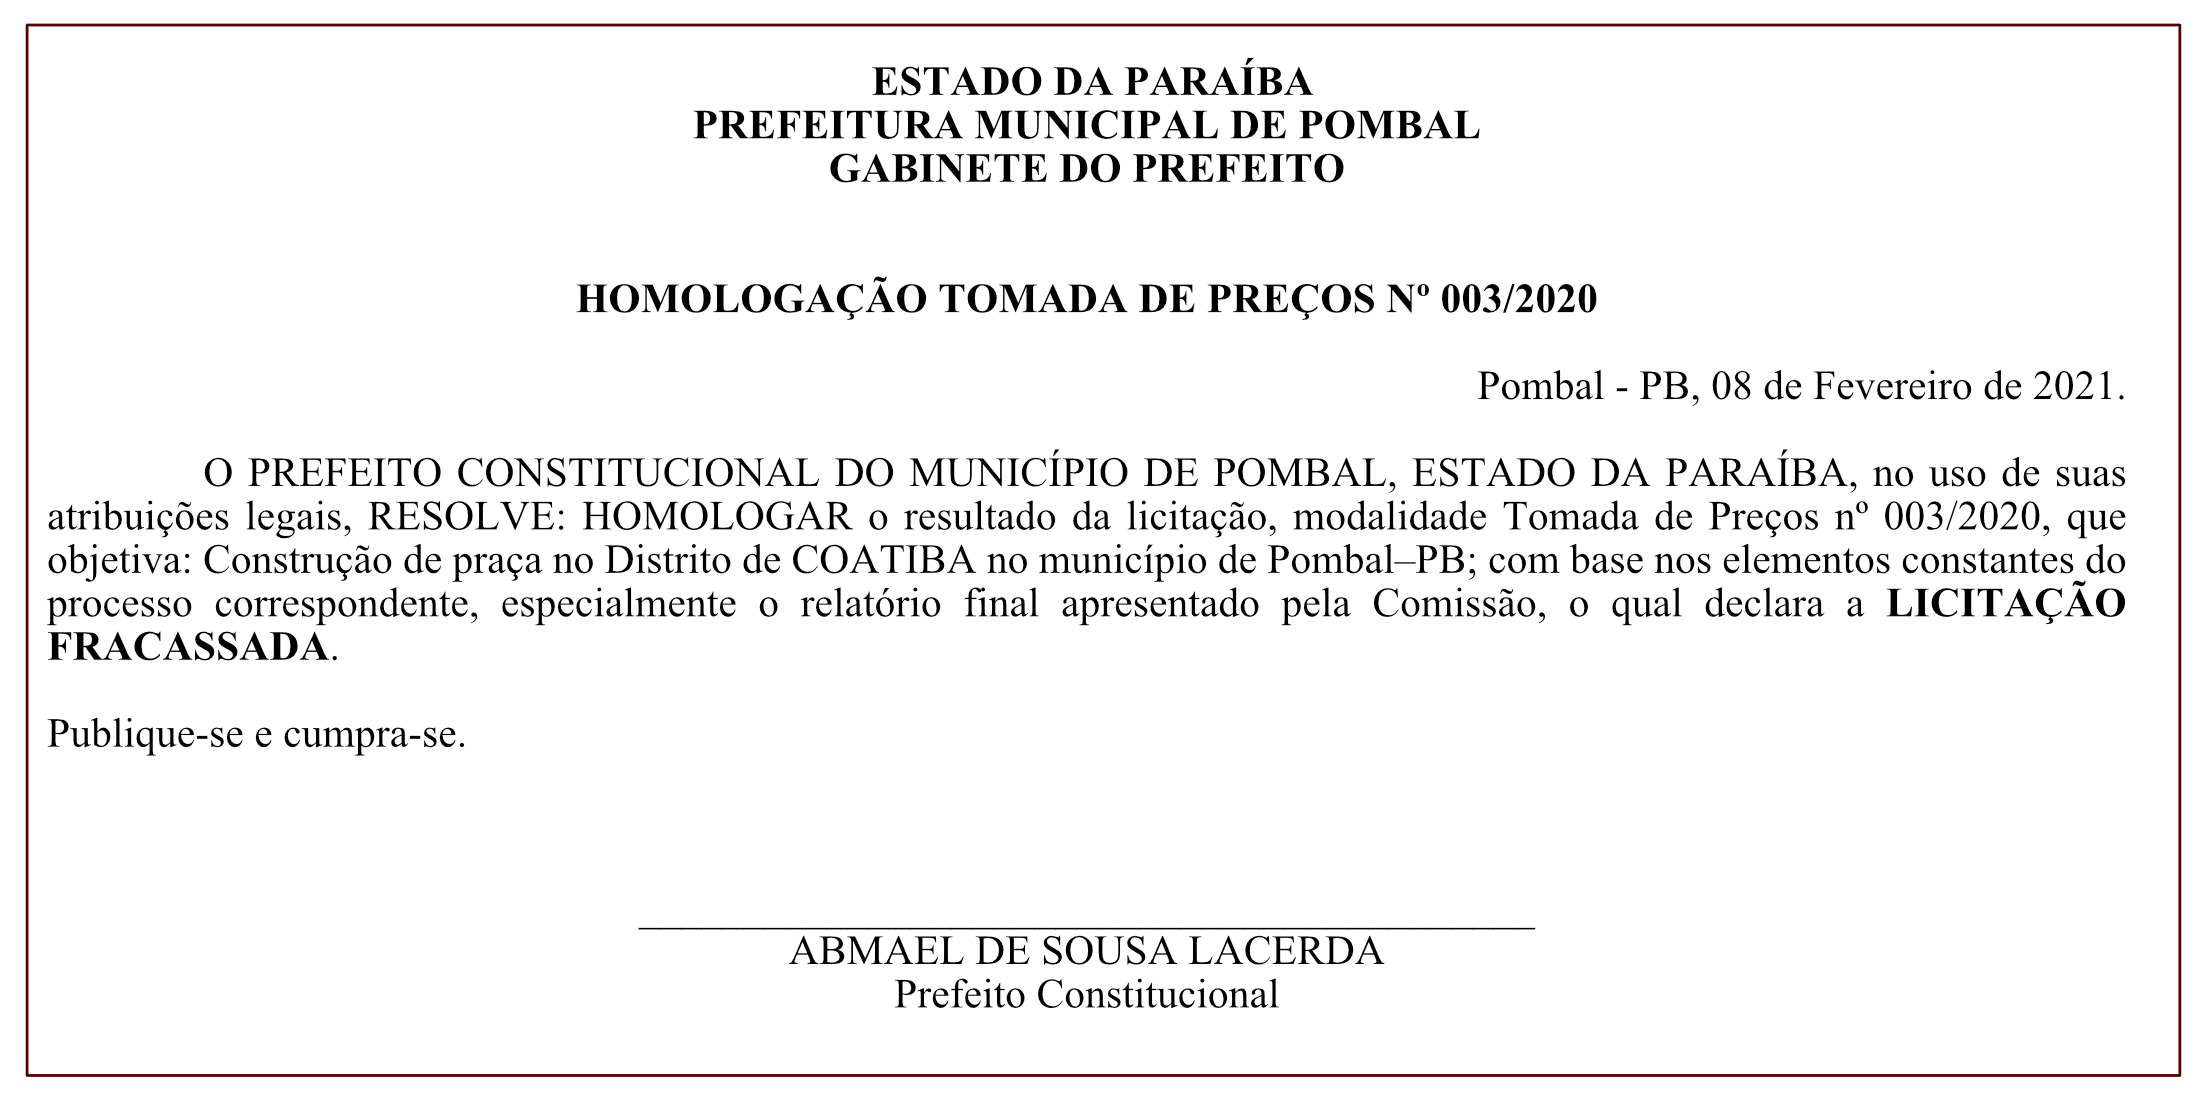 PREFEITURA MUNICIPAL DE POMBAL – GABINETE DO PREFEITO – HOMOLOGAÇÃO TOMADA DE PREÇOS Nº 003/2020